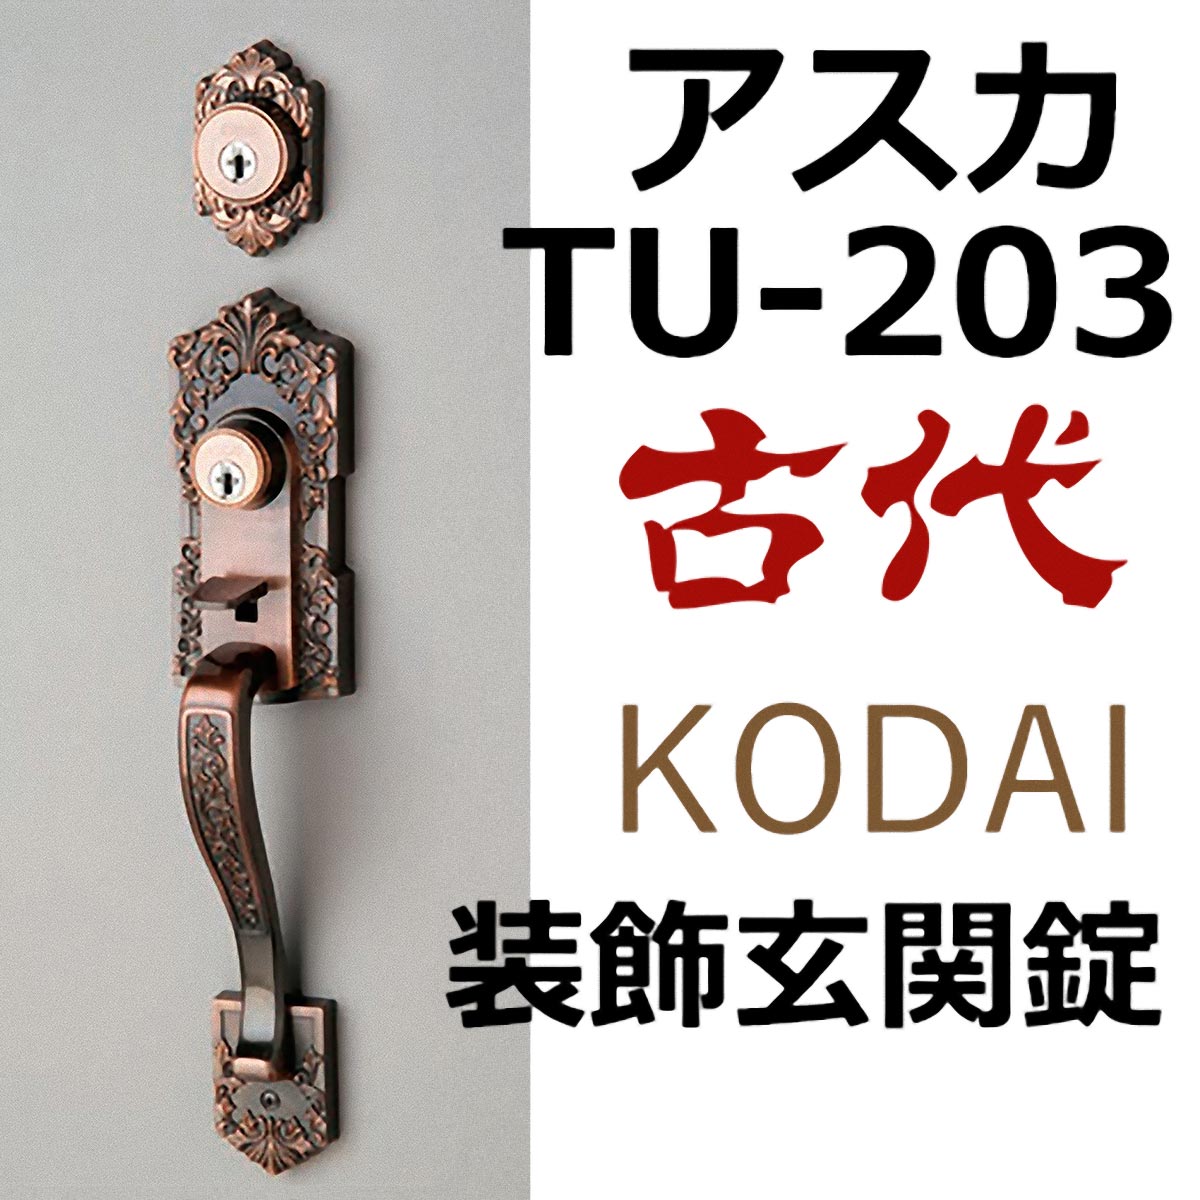 最大の割引 KODAI 古代 装飾錠 アスカ ツーロック TU-201 サムラッチハンドル錠 補助錠 24511GB ドアノブ 長沢製作所 